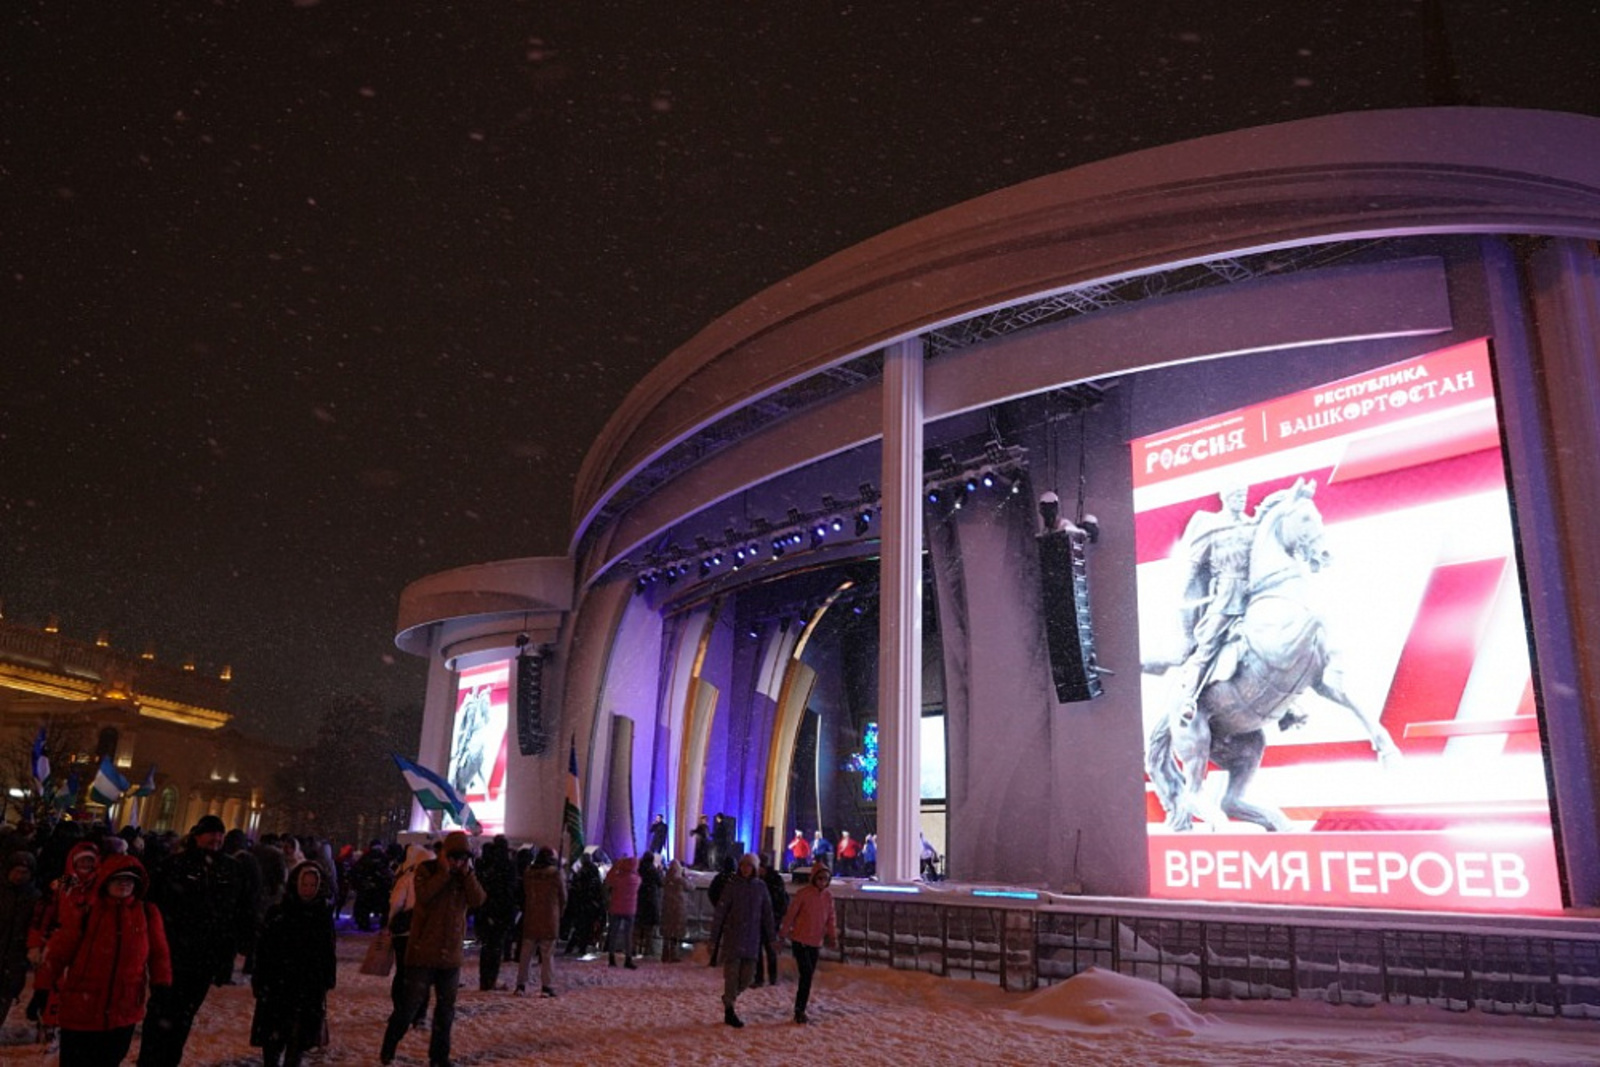 Патриотический концерт «Время героев» представила Башкирия в Москве  гостям выставки-форума «Россия»